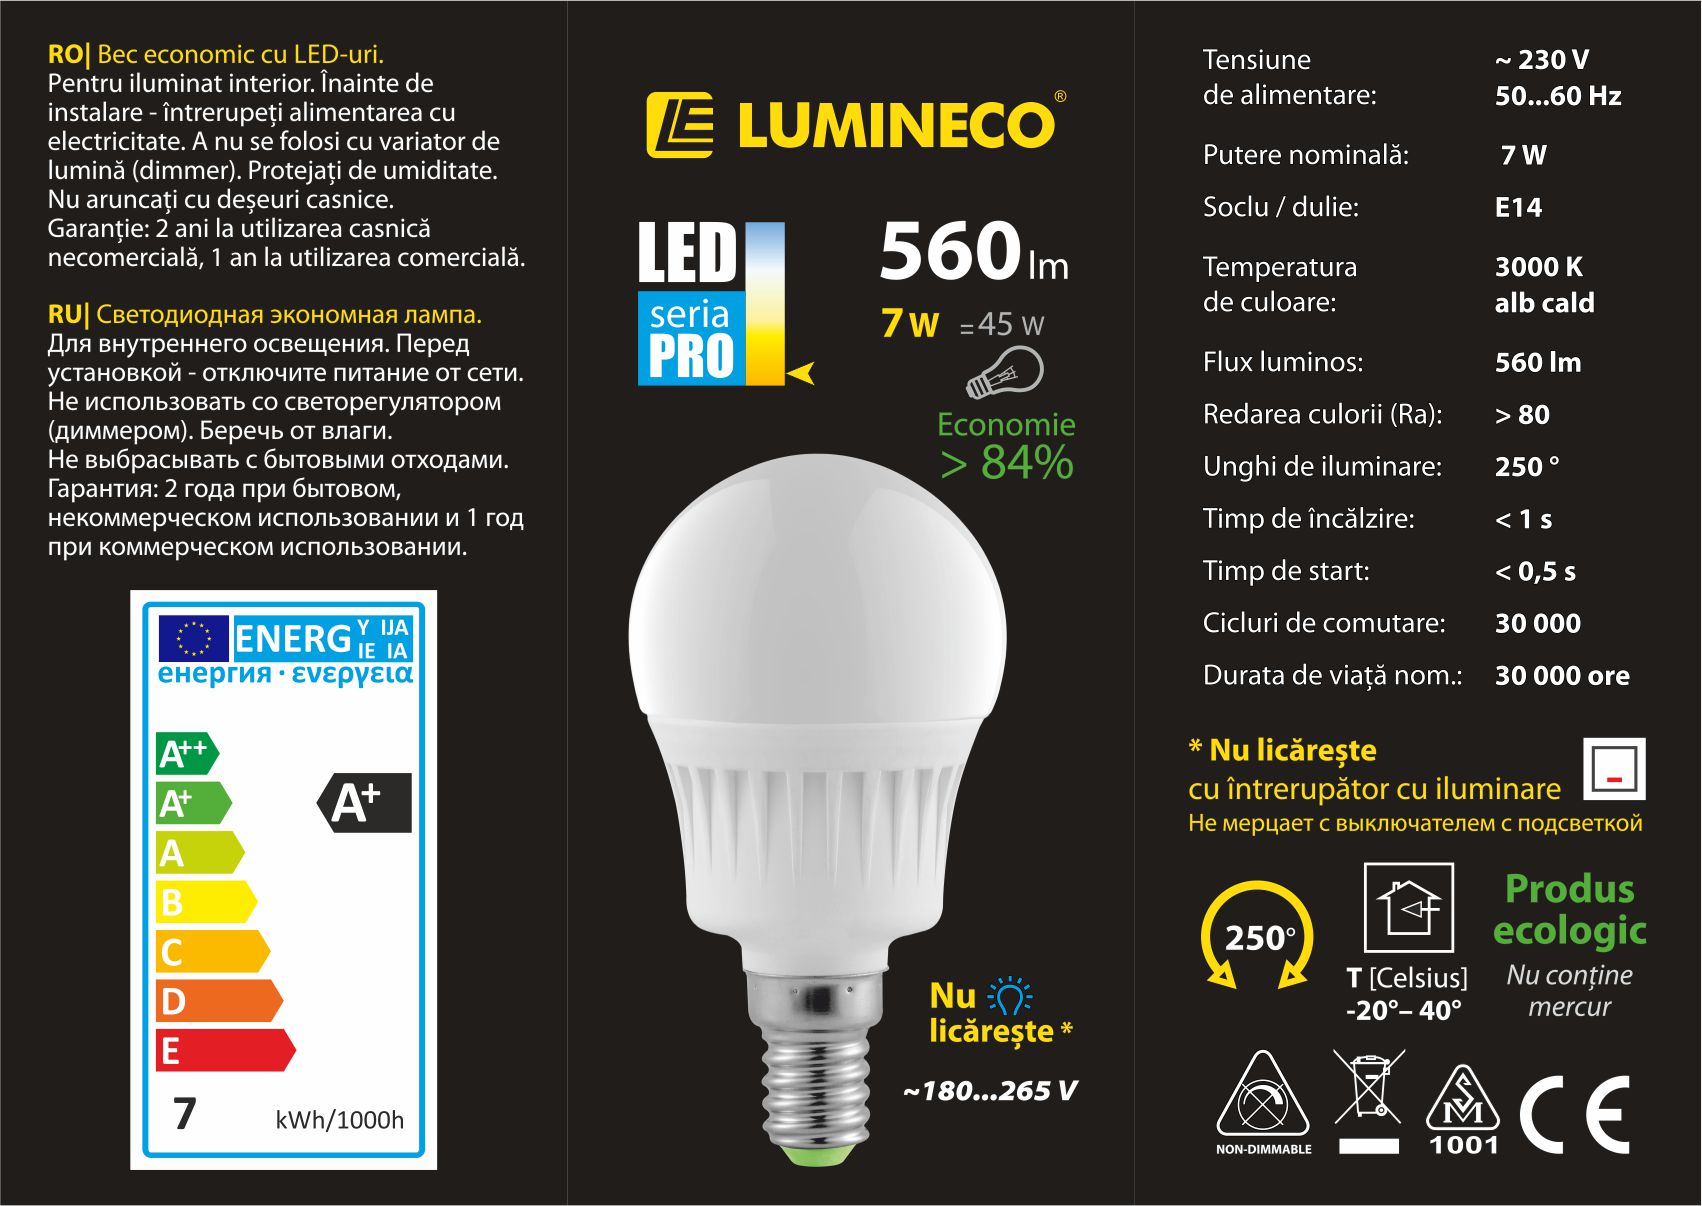 10107027, Светодиодная лампа LED PRO G45 7W E14 3000K,
Светодиодная лампа LED PRO G45 7W E14 3000K
Мощность (Вт) 7
Эквивал. традиц. (Вт) 45
Напряжение (В) 230V AC
Цветовая температура (K) 3000K
Цвет свечения белый тёплый
Световой поток (Лм) 560
Индекс цветопередачи (Ra) 80
Угол рассеивания(°) 250
Цоколь E14
Материал корпуса PC+ALU
Цвет корпуса белый
Время разогрева (с) 1
Время запуска (с) 0.5
Кол-во циклов вкл./ выкл. 30000
Световой поток после 6000 ч (%) 80
Срок службы (ч) 30000
Длина (мм) 90
Диаметр (мм) 45
Совместимость со светорегулятором Нет
Гарантия (мес.) * при бытовом некоммерческом использовании	24